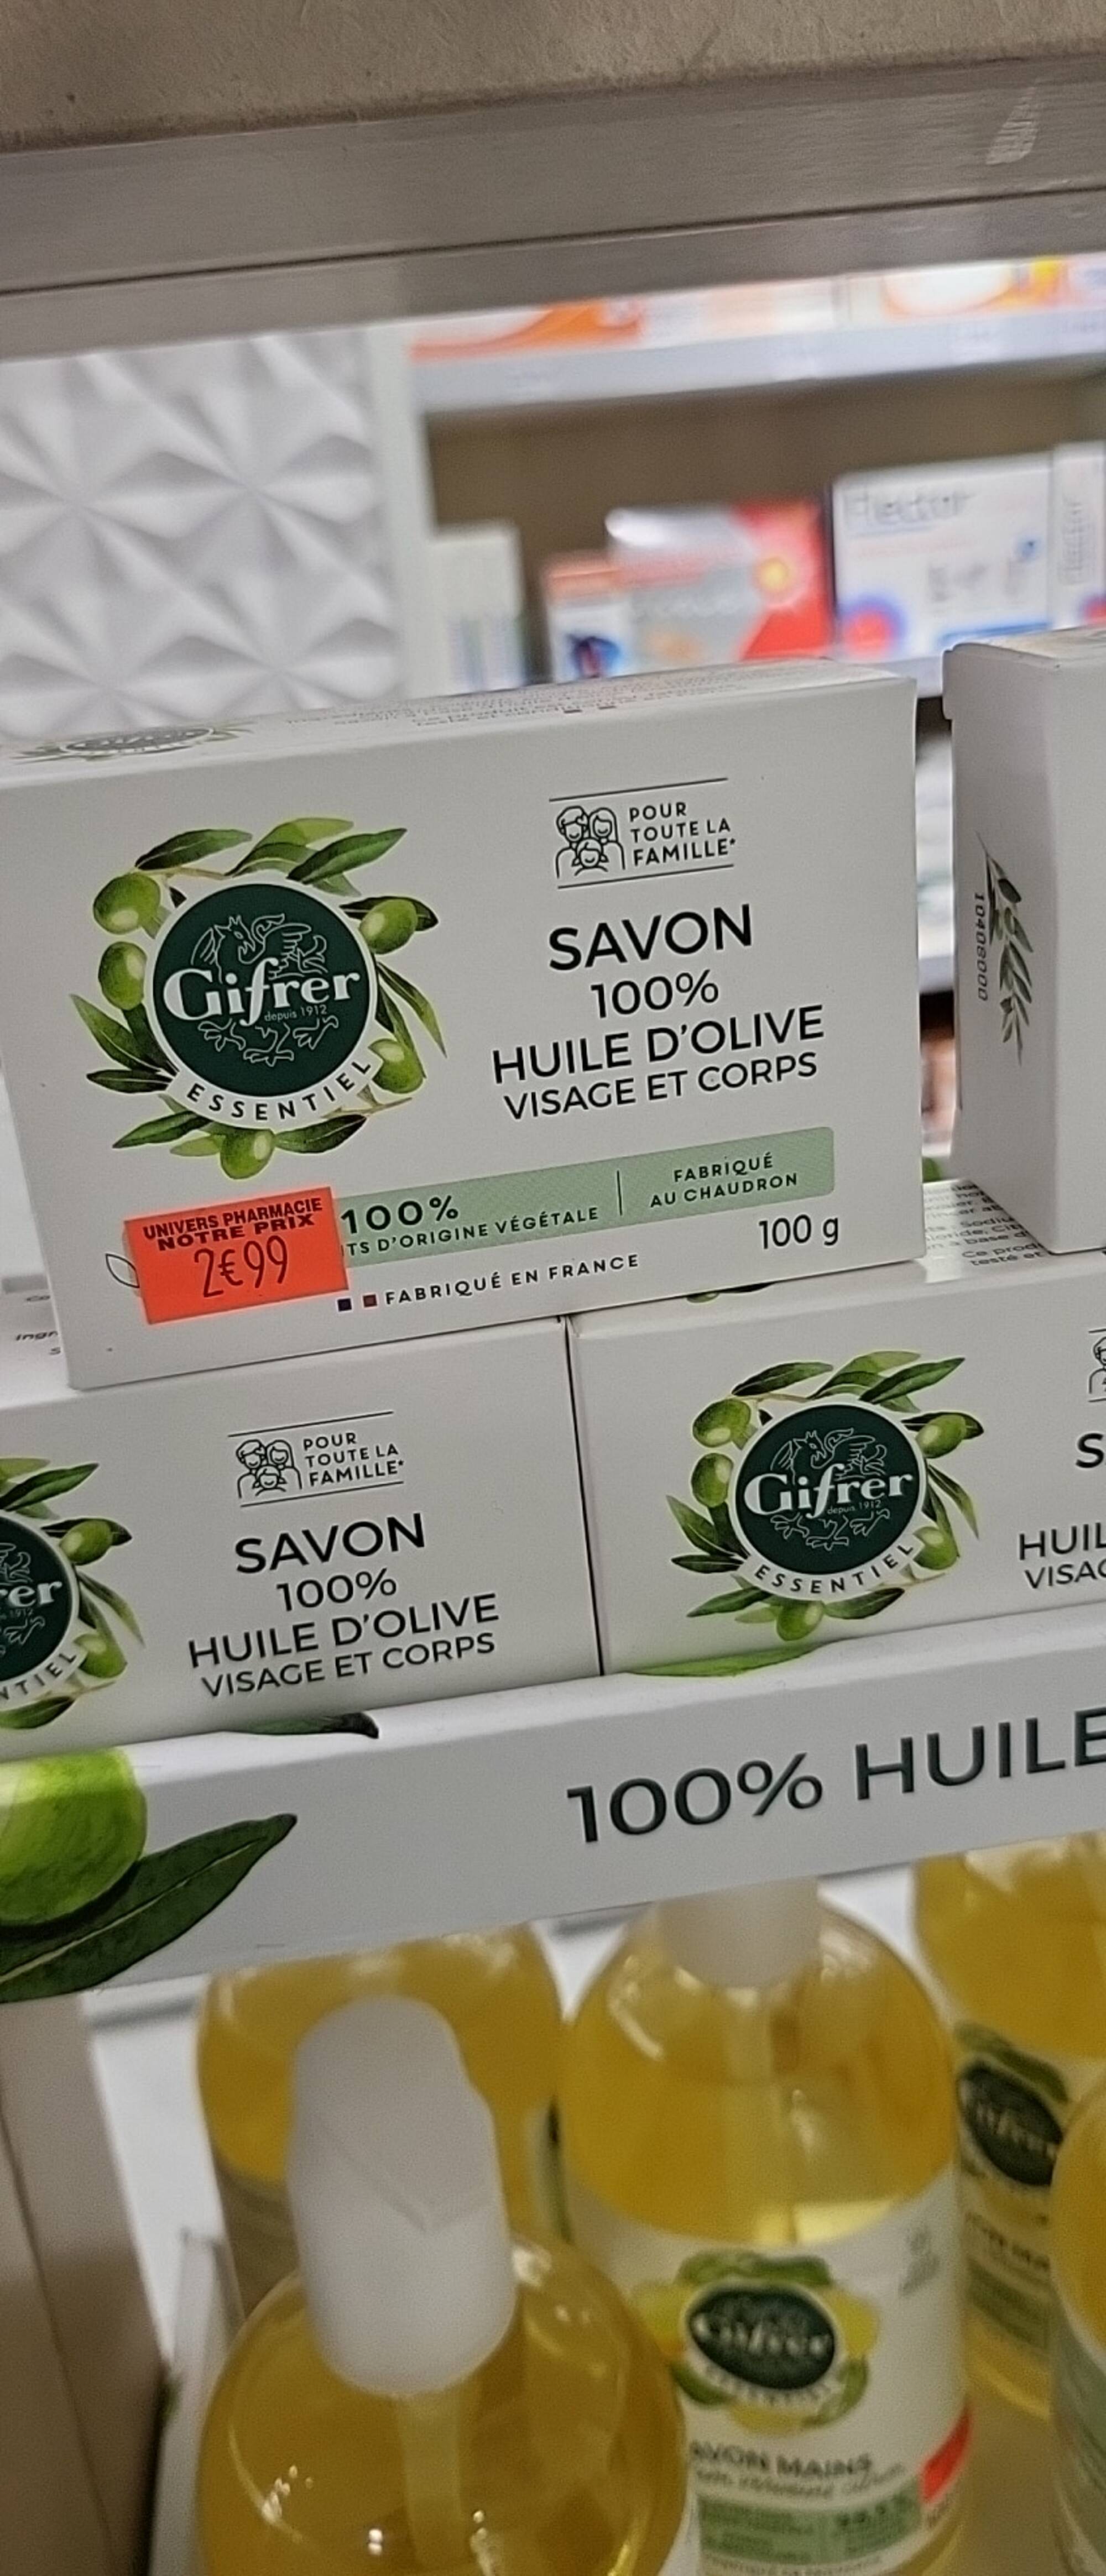 GIFRER - Savon 100% huile d'olive visage et corps